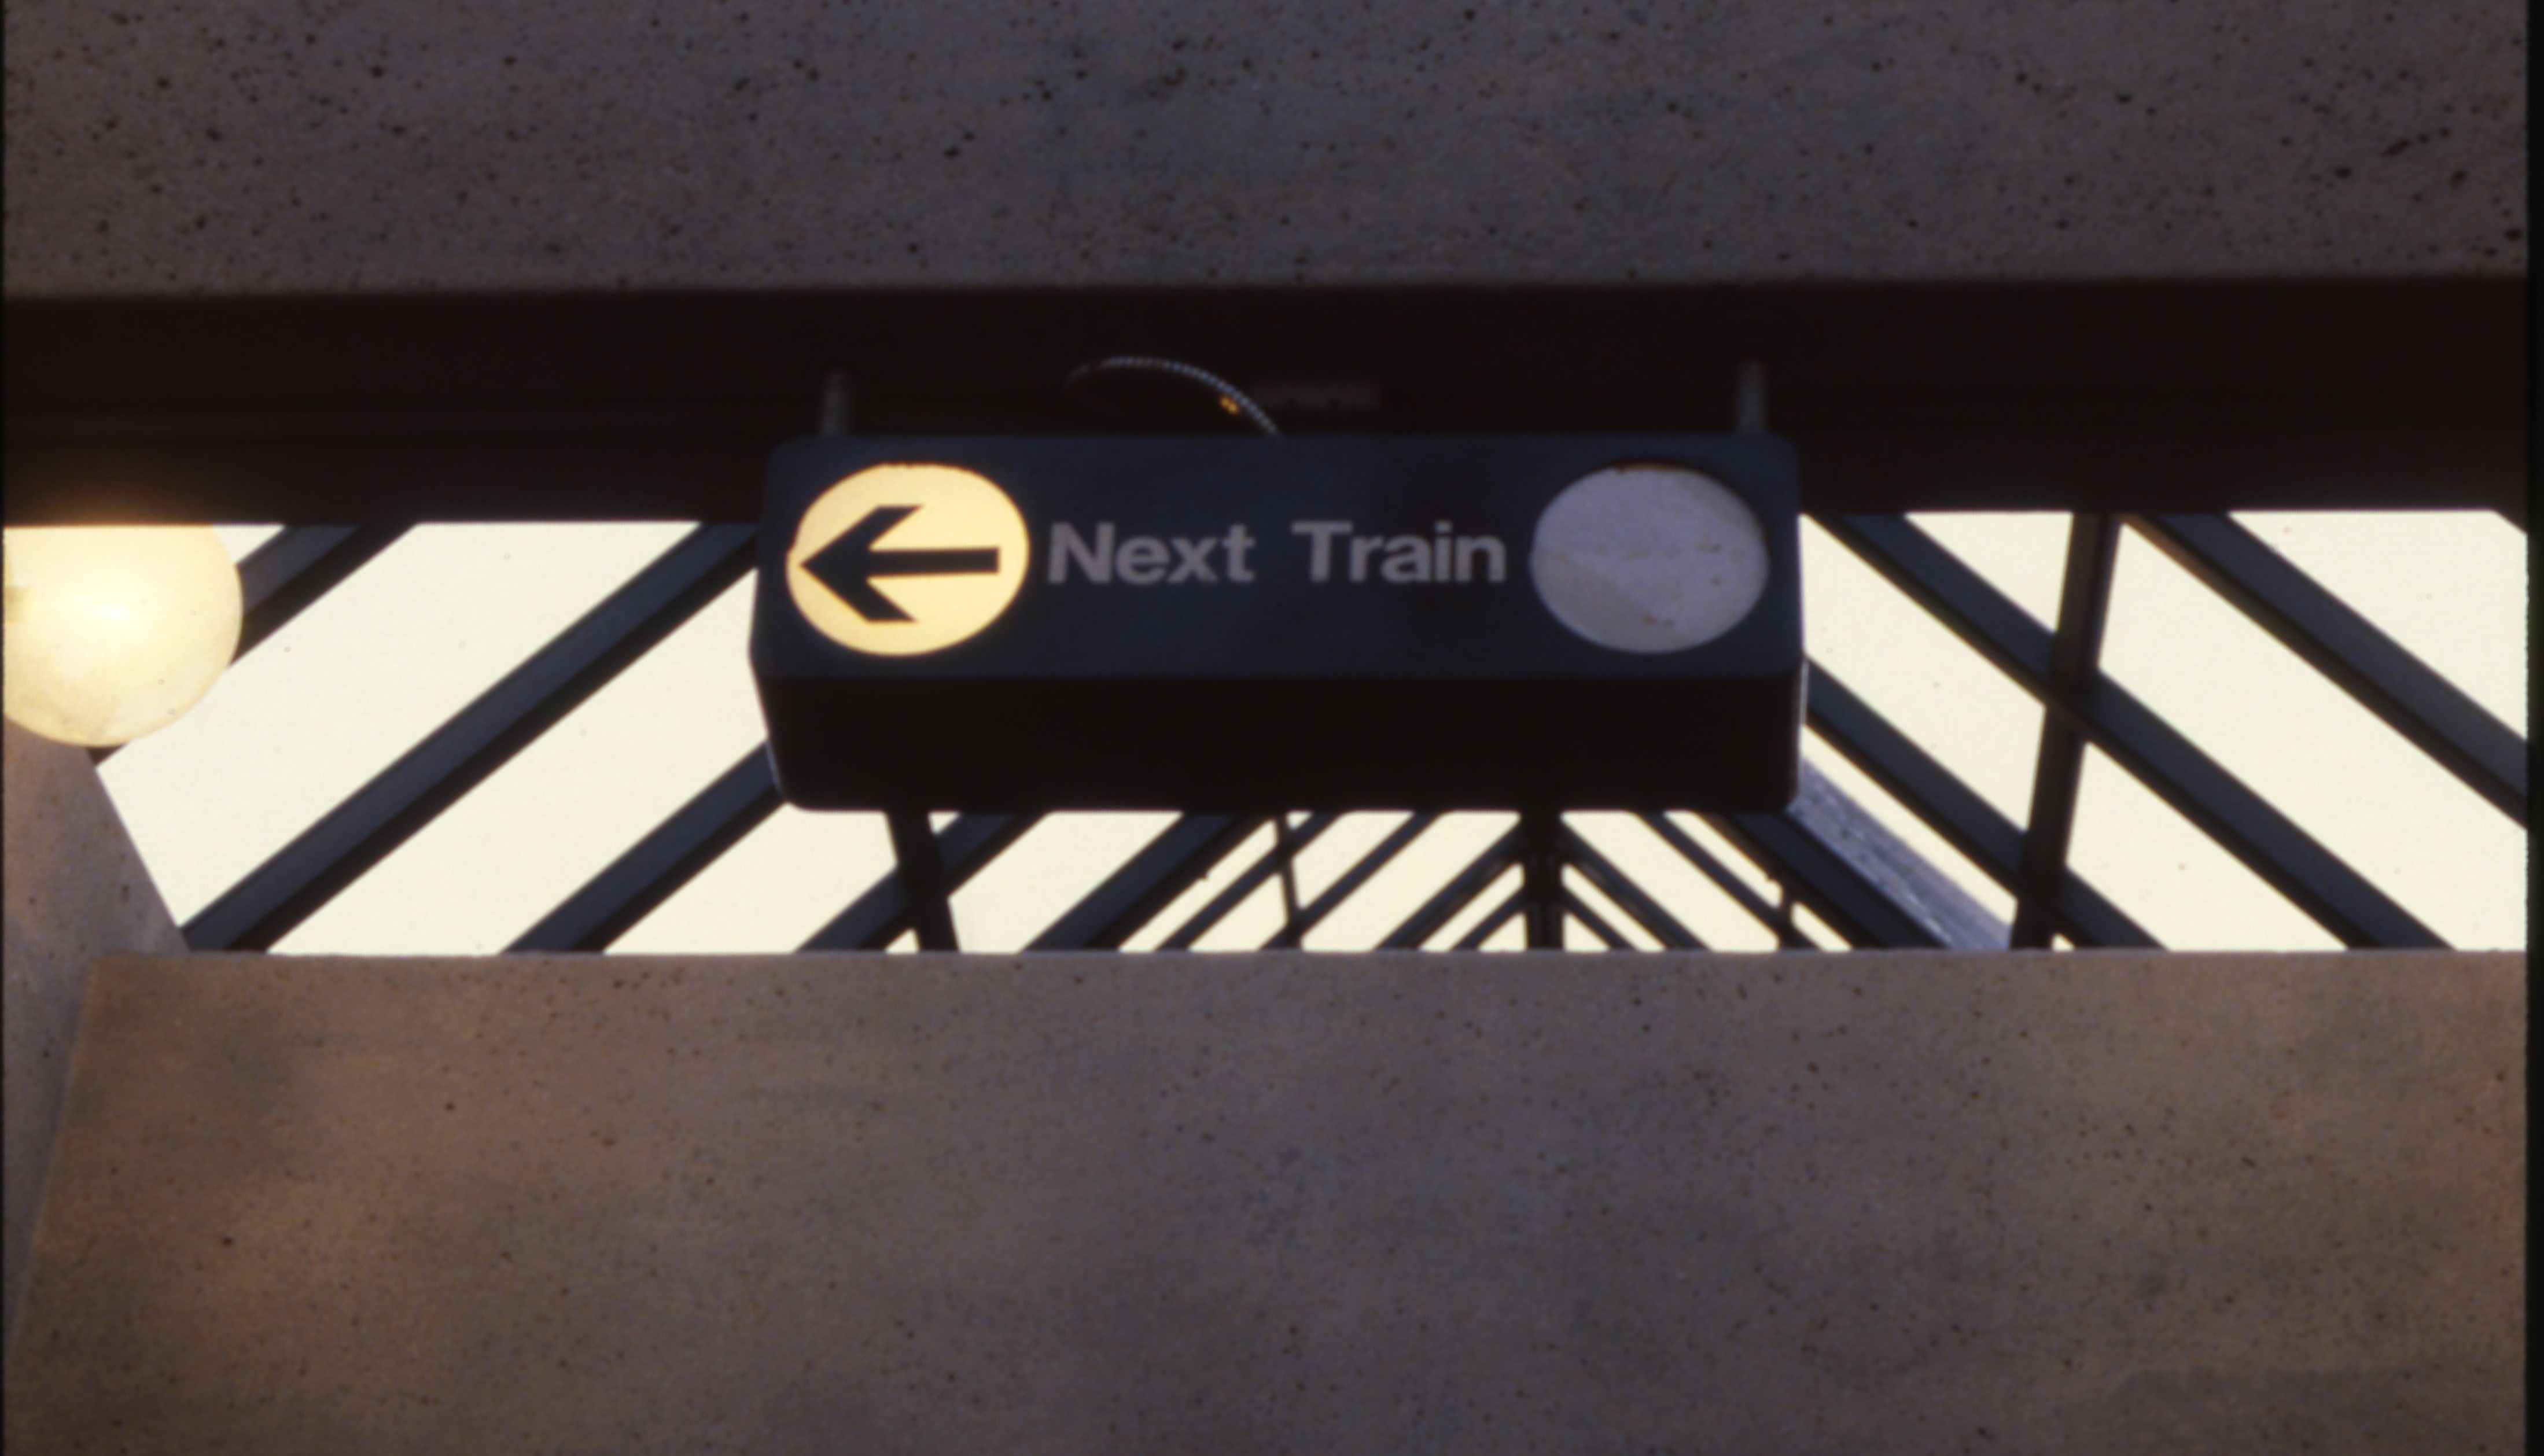 Vienna Station - March 1989